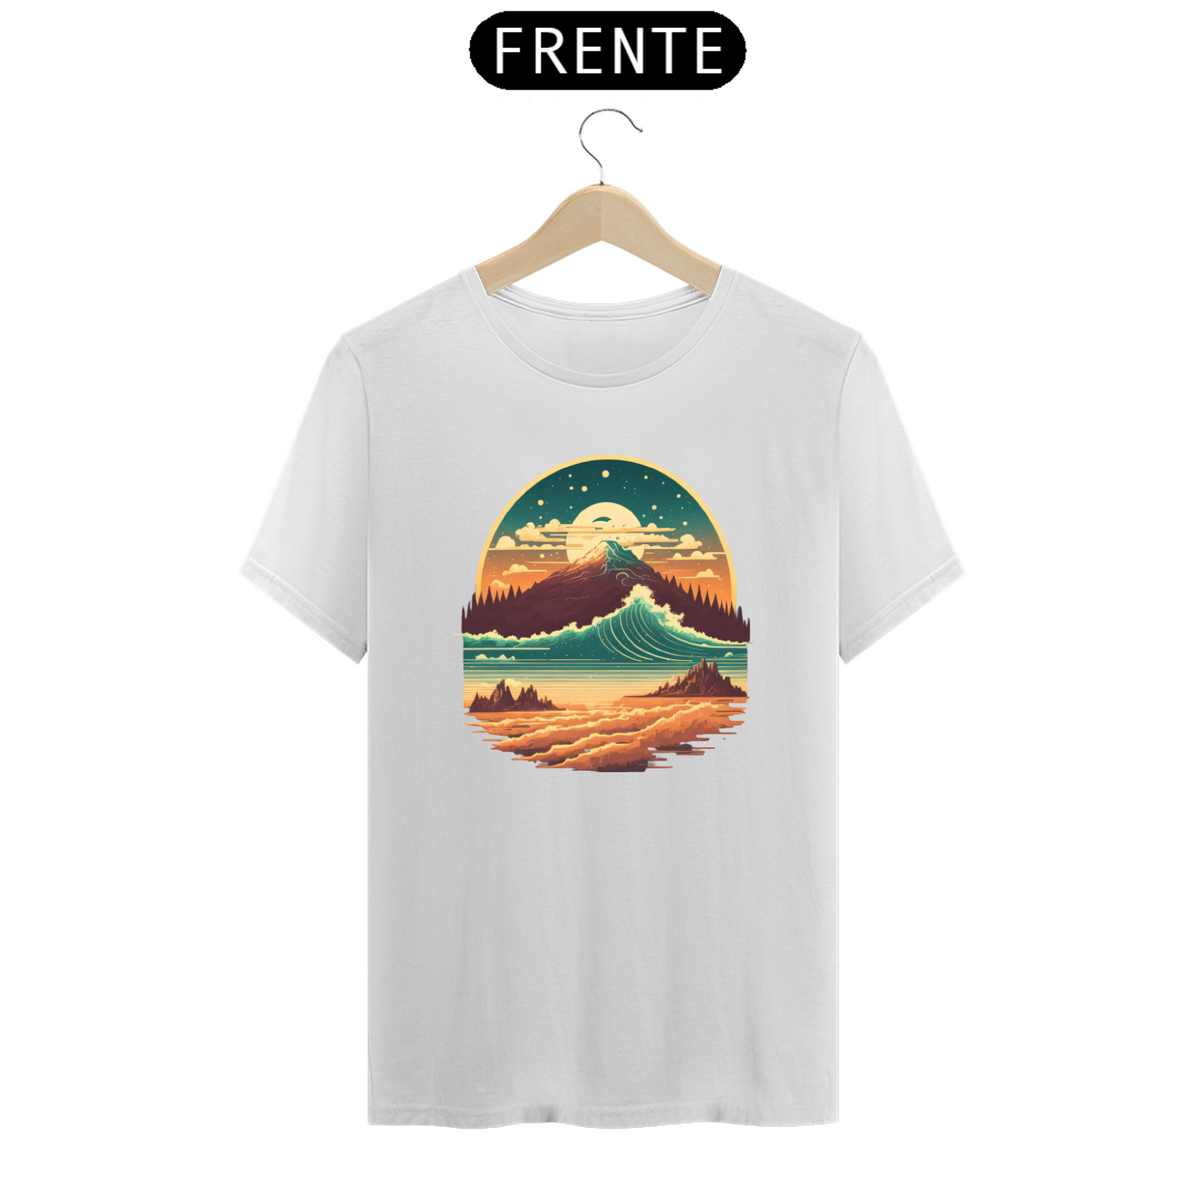 Nome do produto: Camiseta pico da montanha